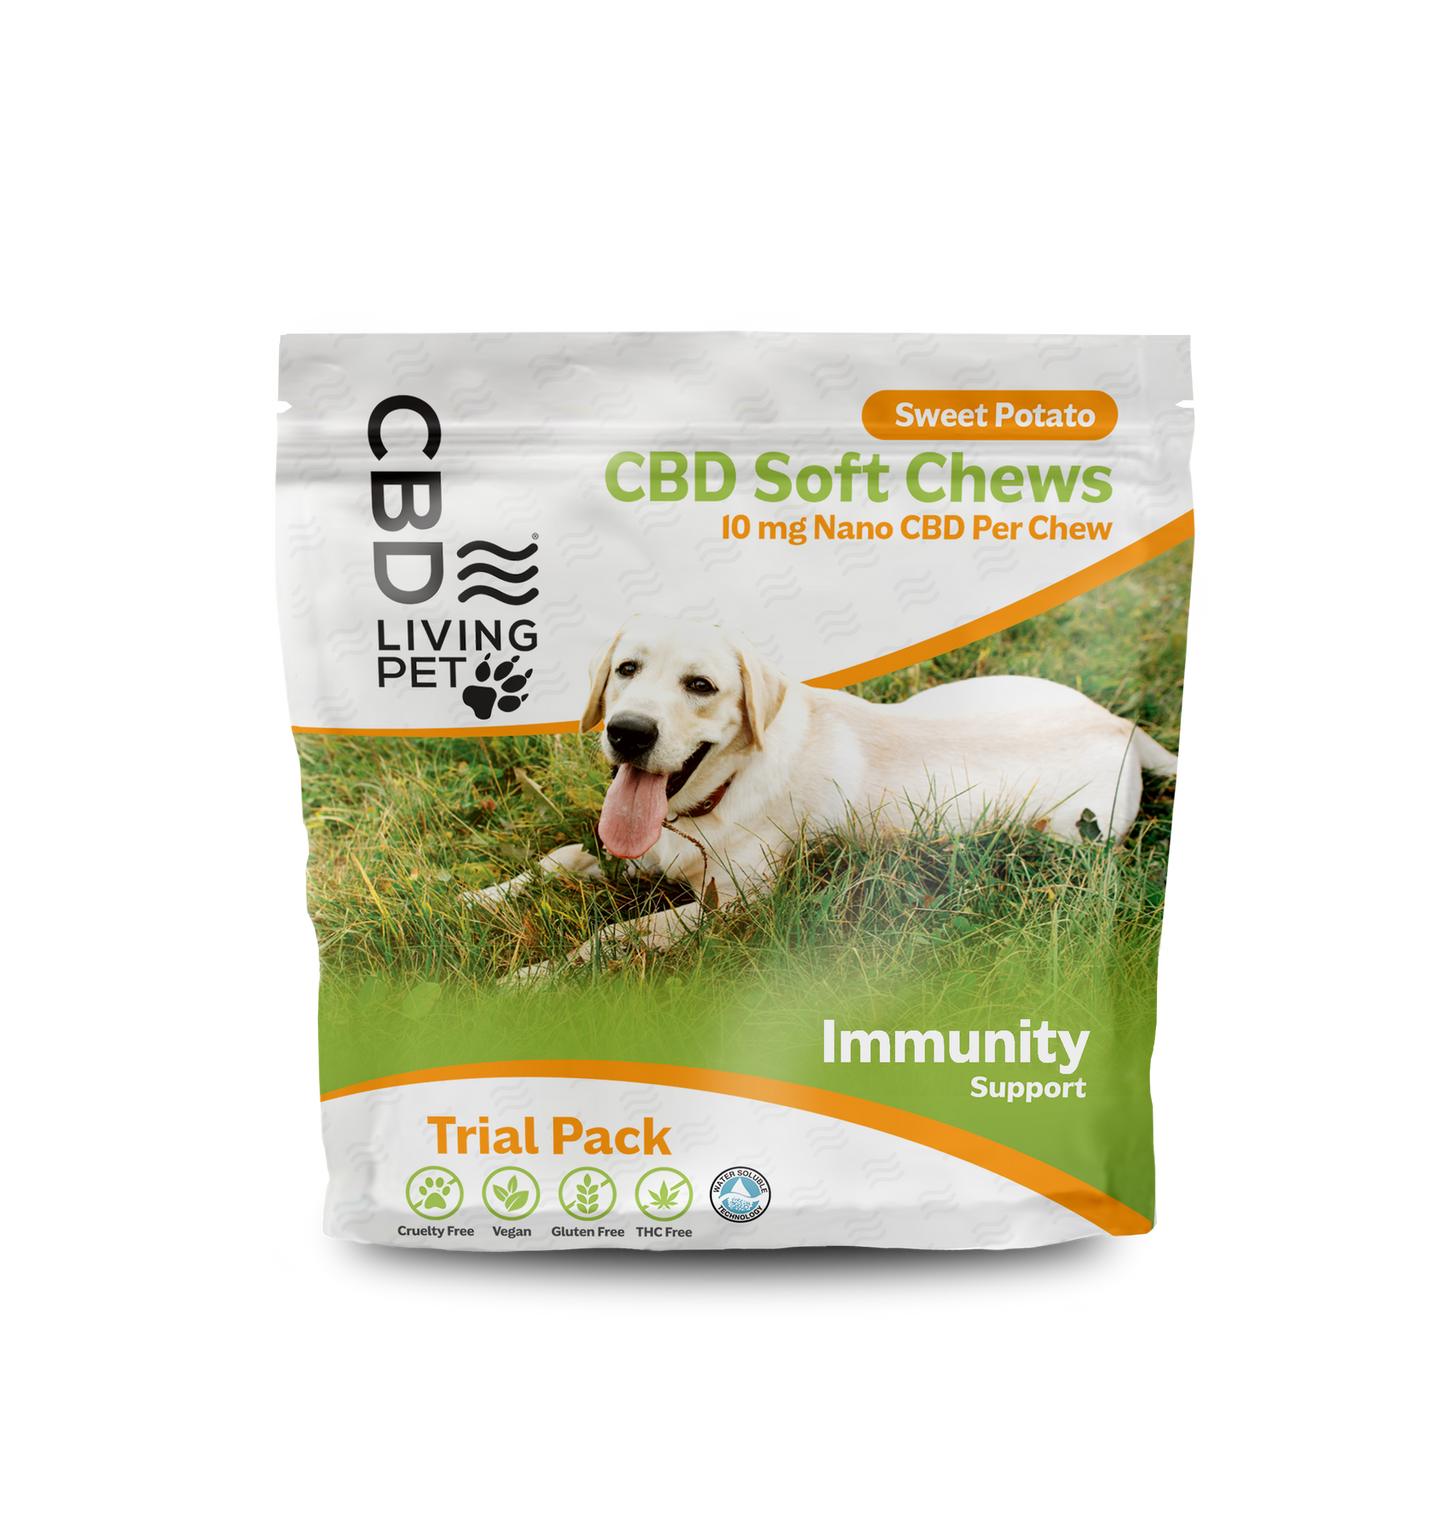 CBD Dog Chews